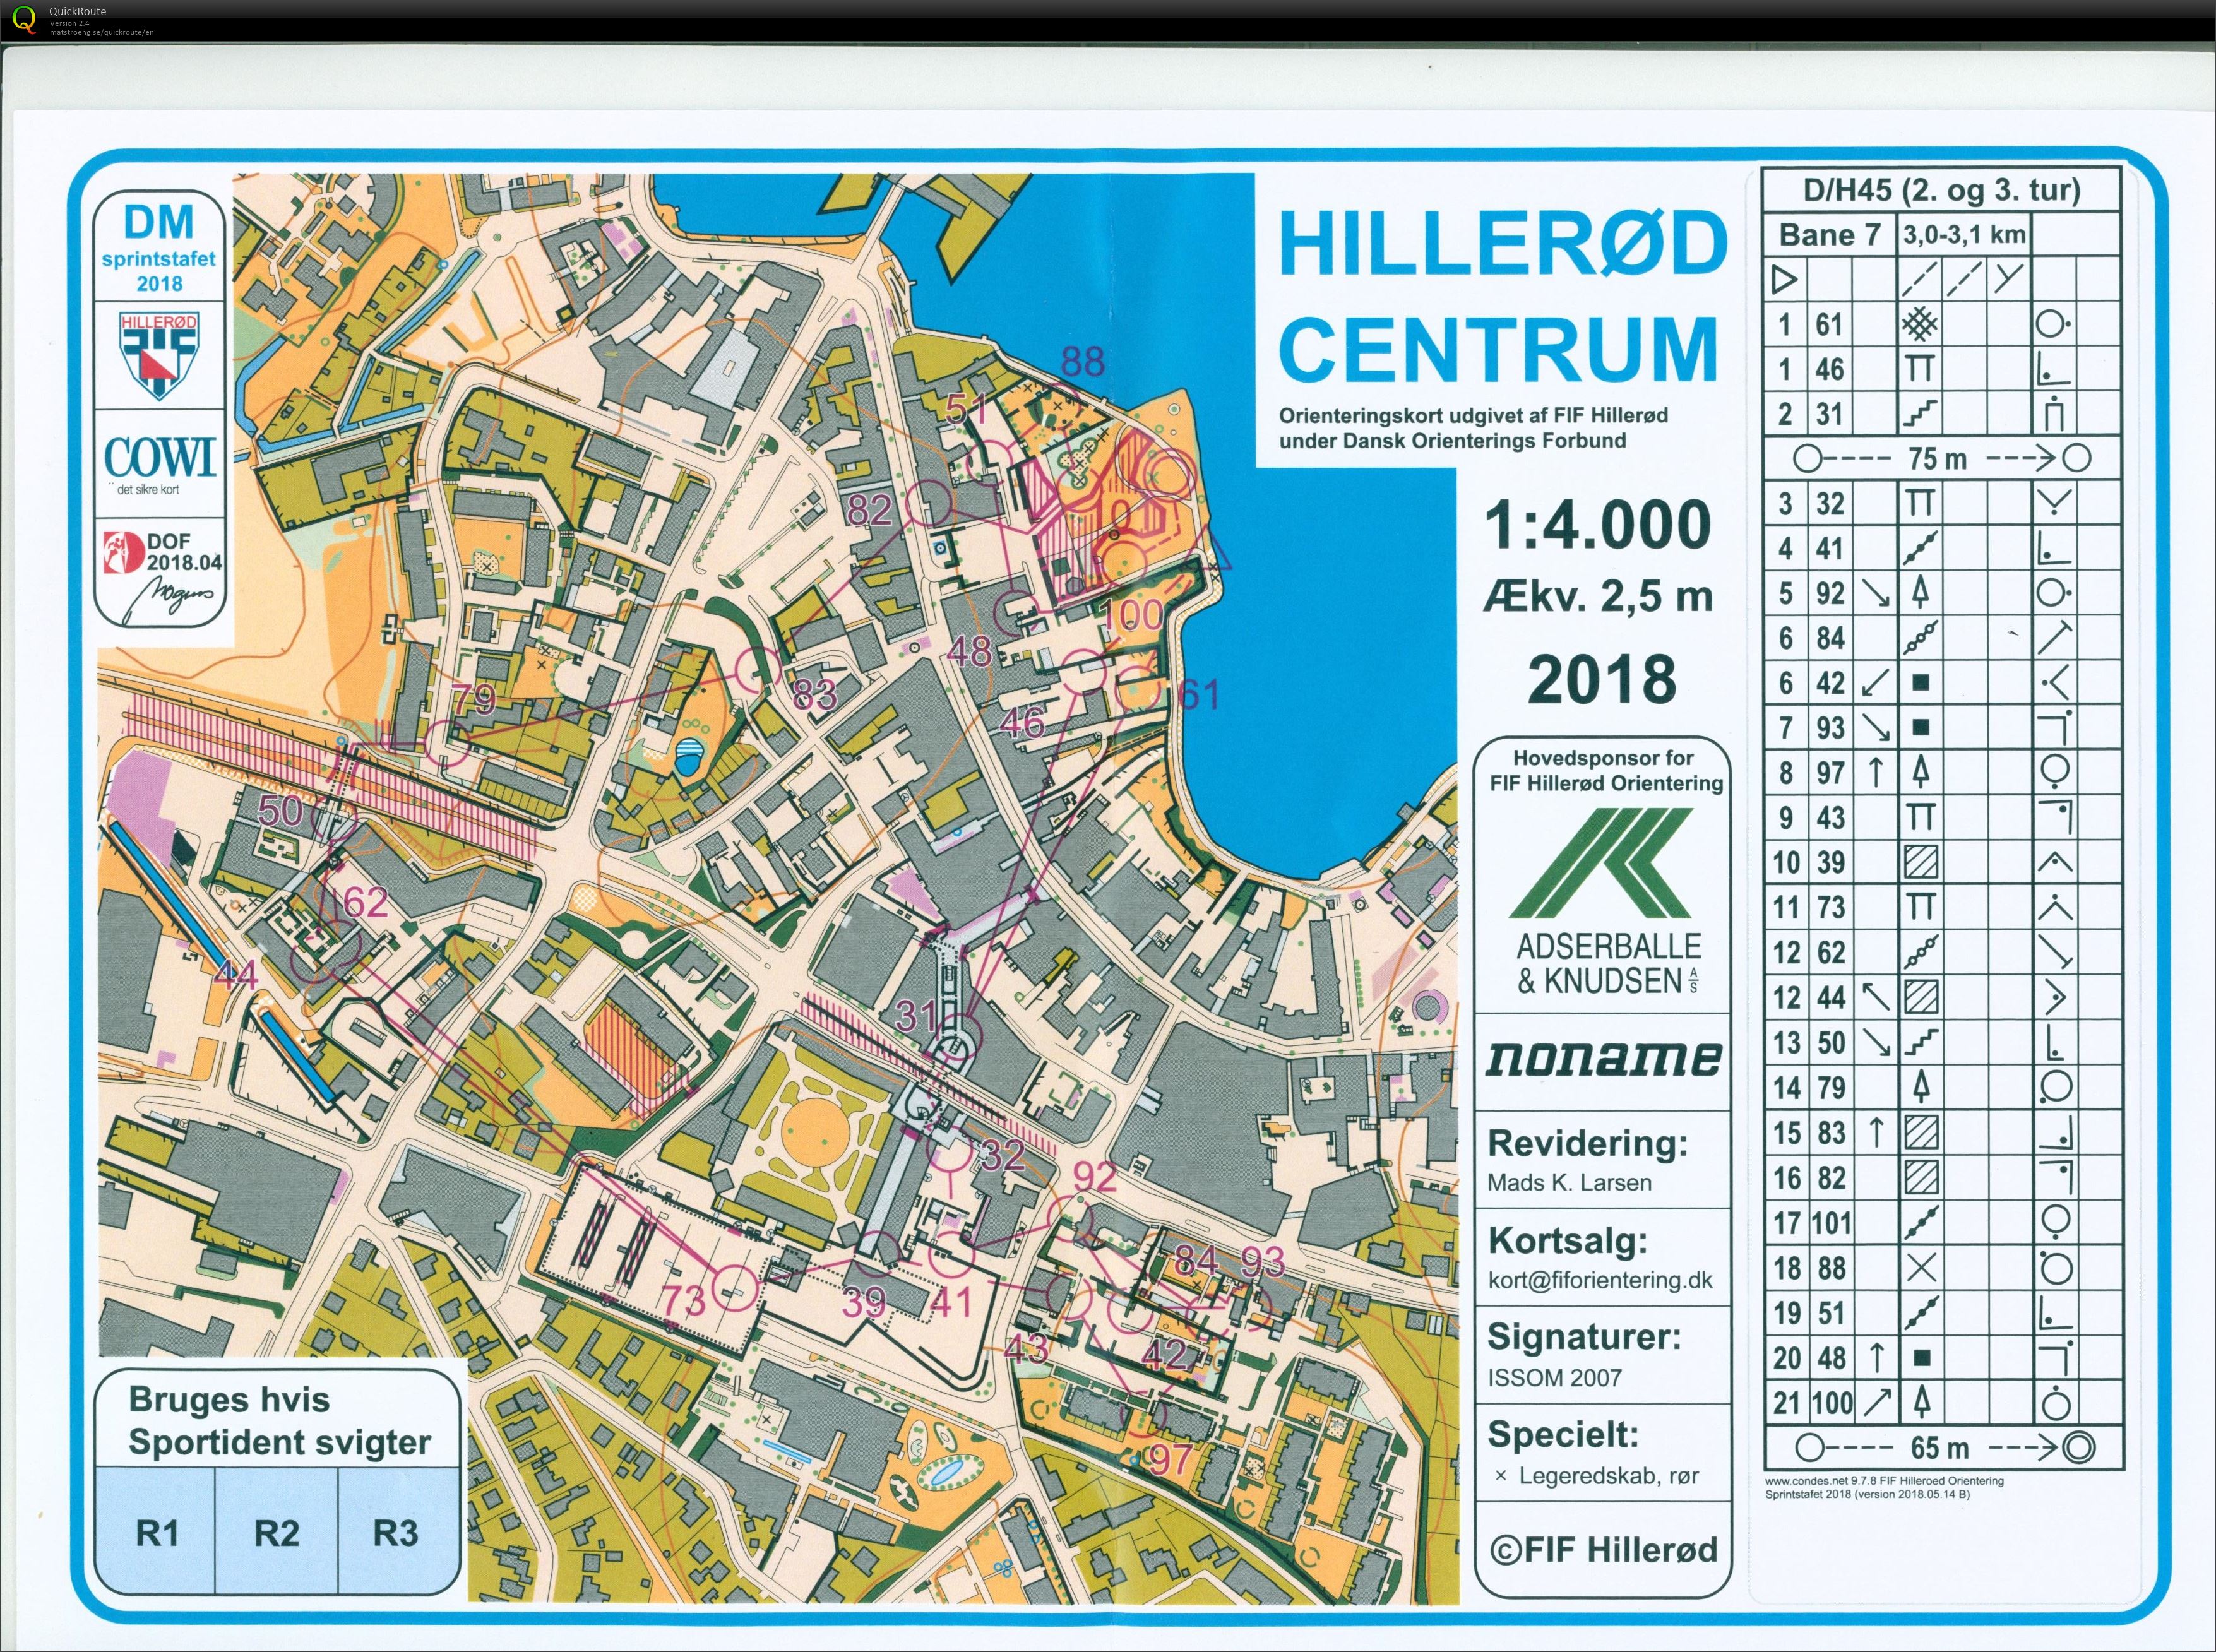 Hillerød sprint stafet D/H45 (27-05-2018)